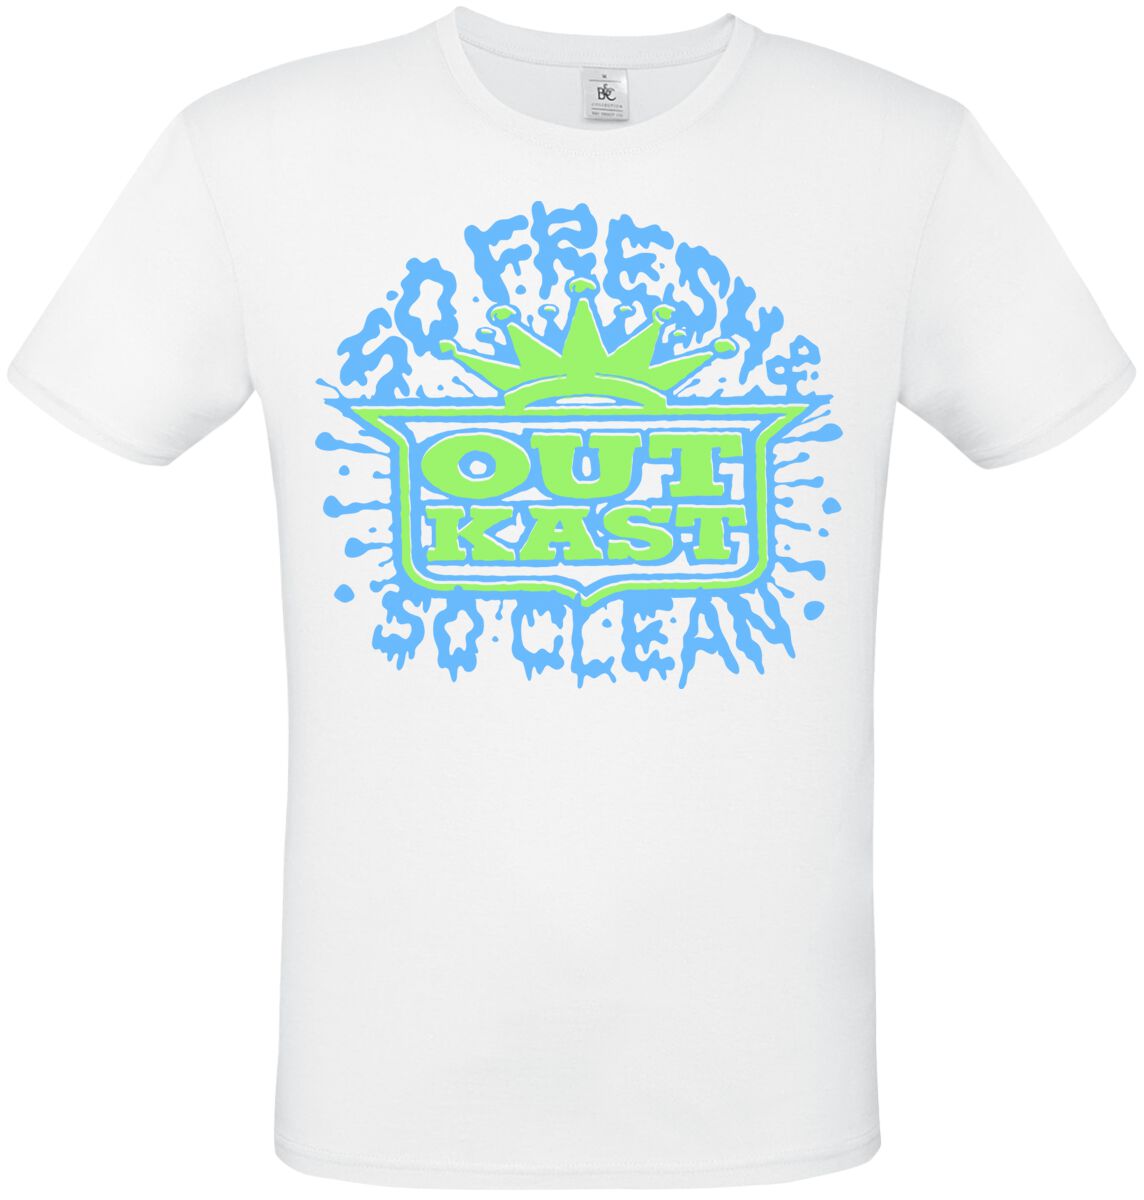 OutKast T-Shirt - So Fresh So Clean - S bis XL - für Männer - Größe L - weiß  - Lizenziertes Merchandise!